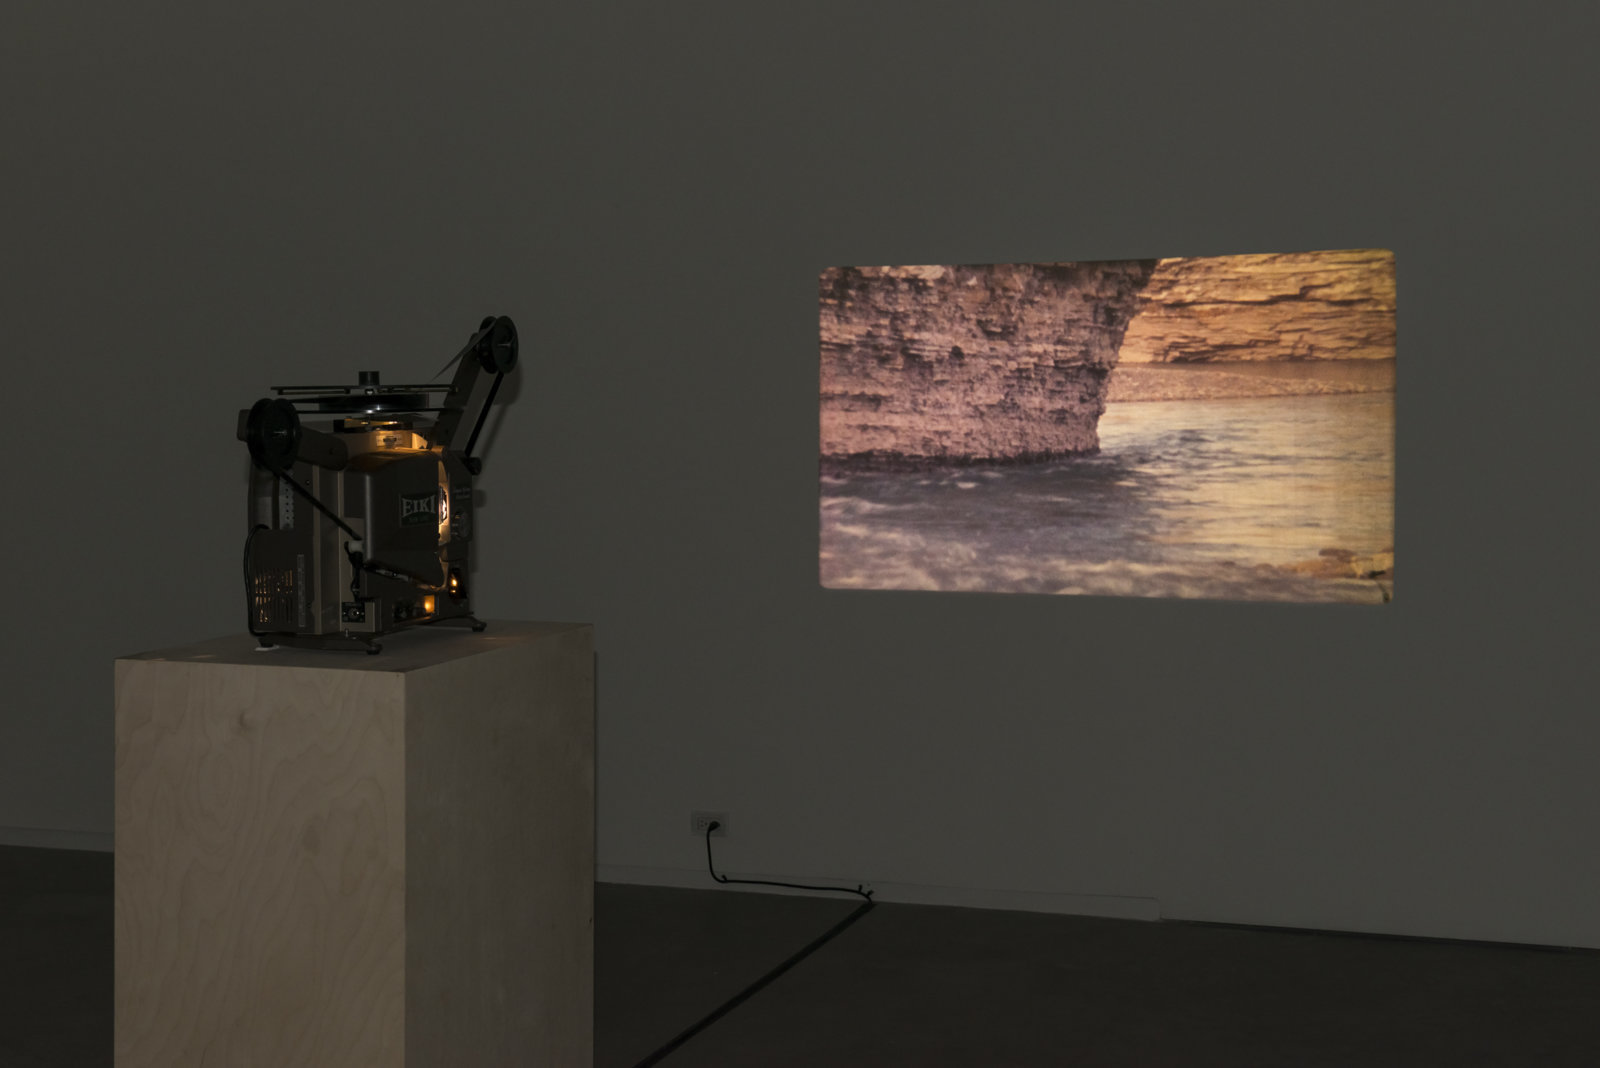 Brian Jungen and Duane Linklater, Stalker, 2013, super 16 mm film loop on projector, 2 minutes, 54 seconds